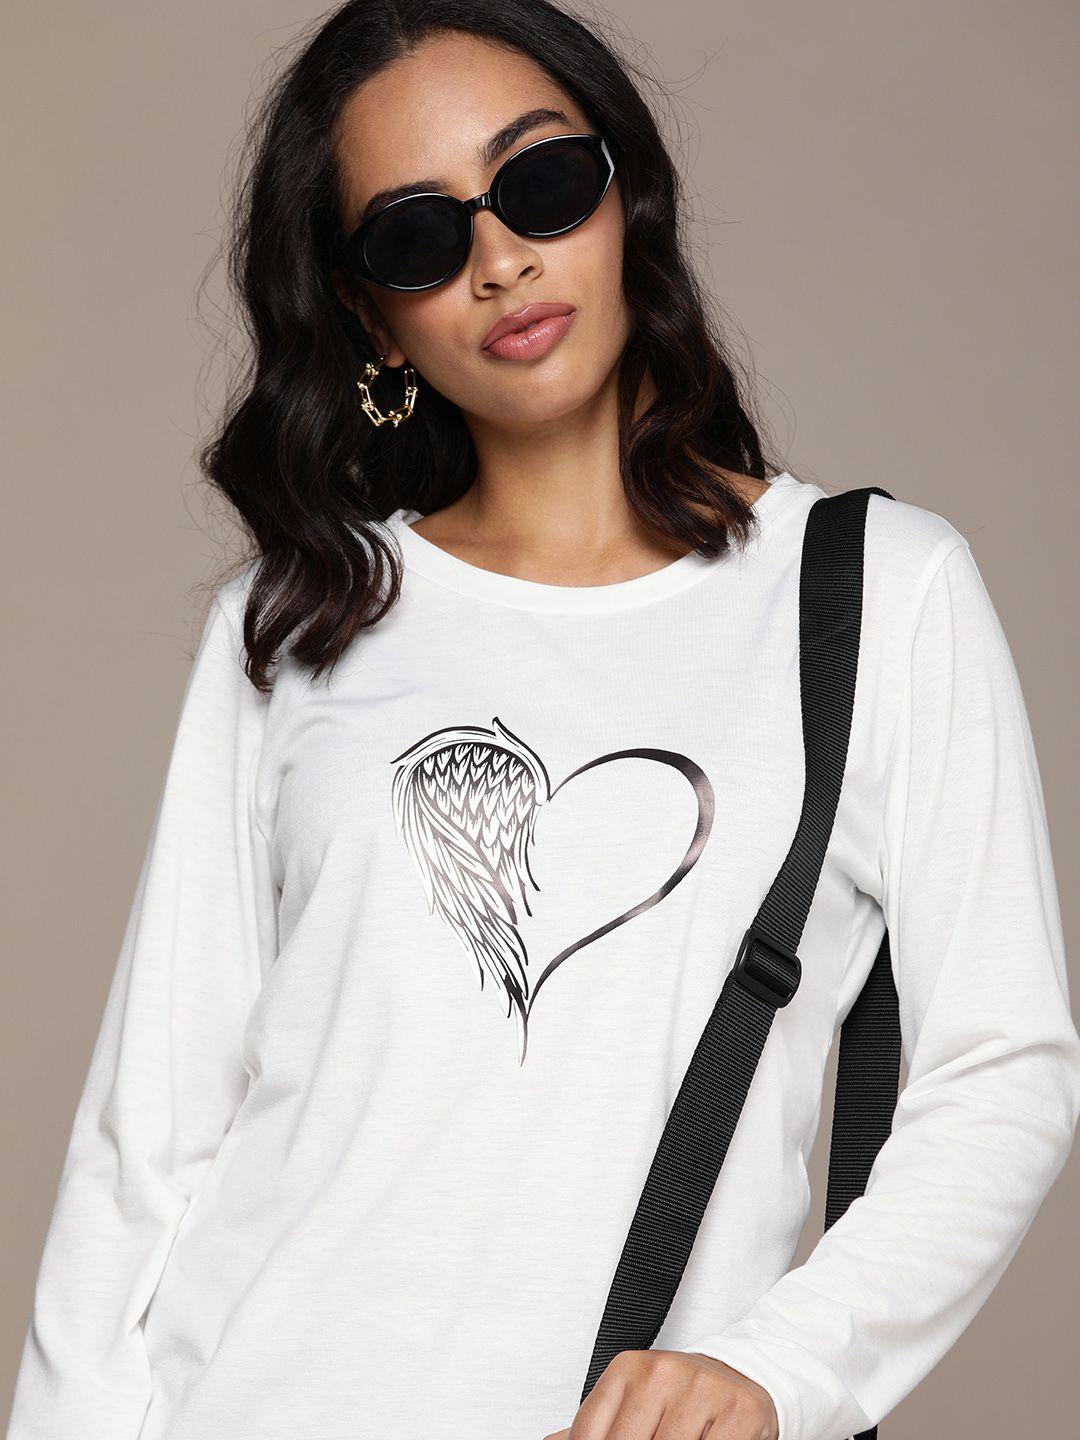 urbanic women white & black printed t-shirt